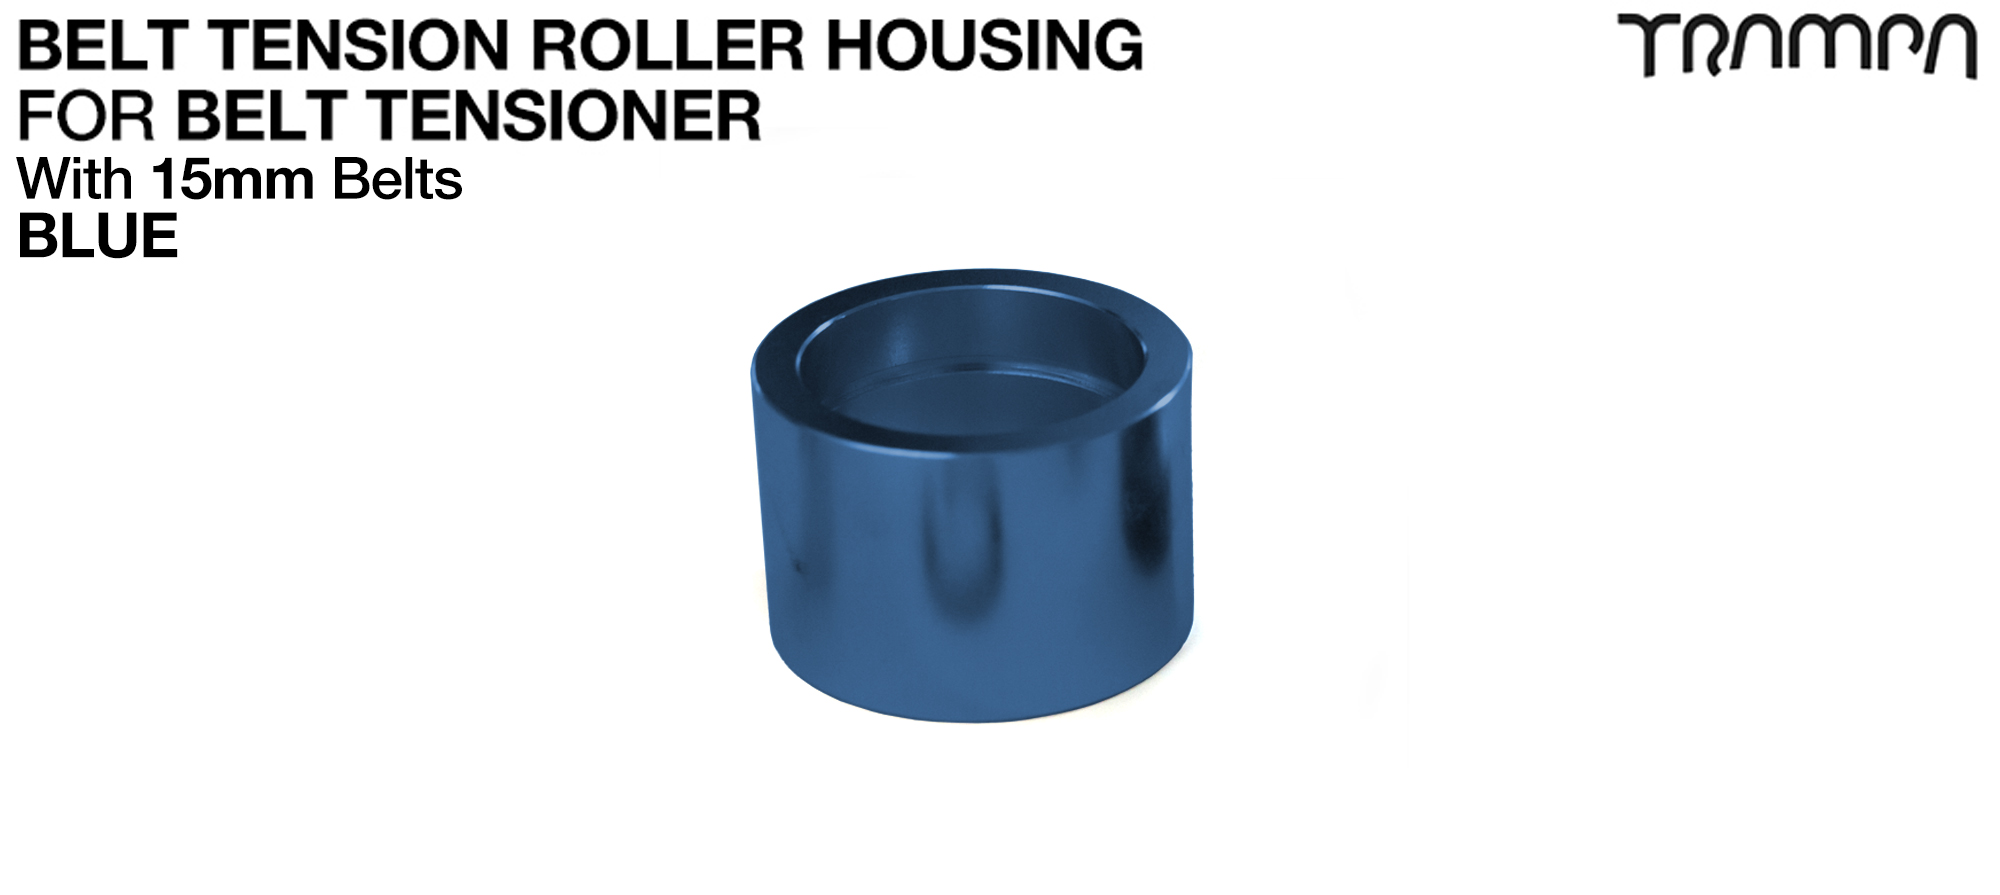 Belt Tension Roller Housing for 15mm Belts - BLUE